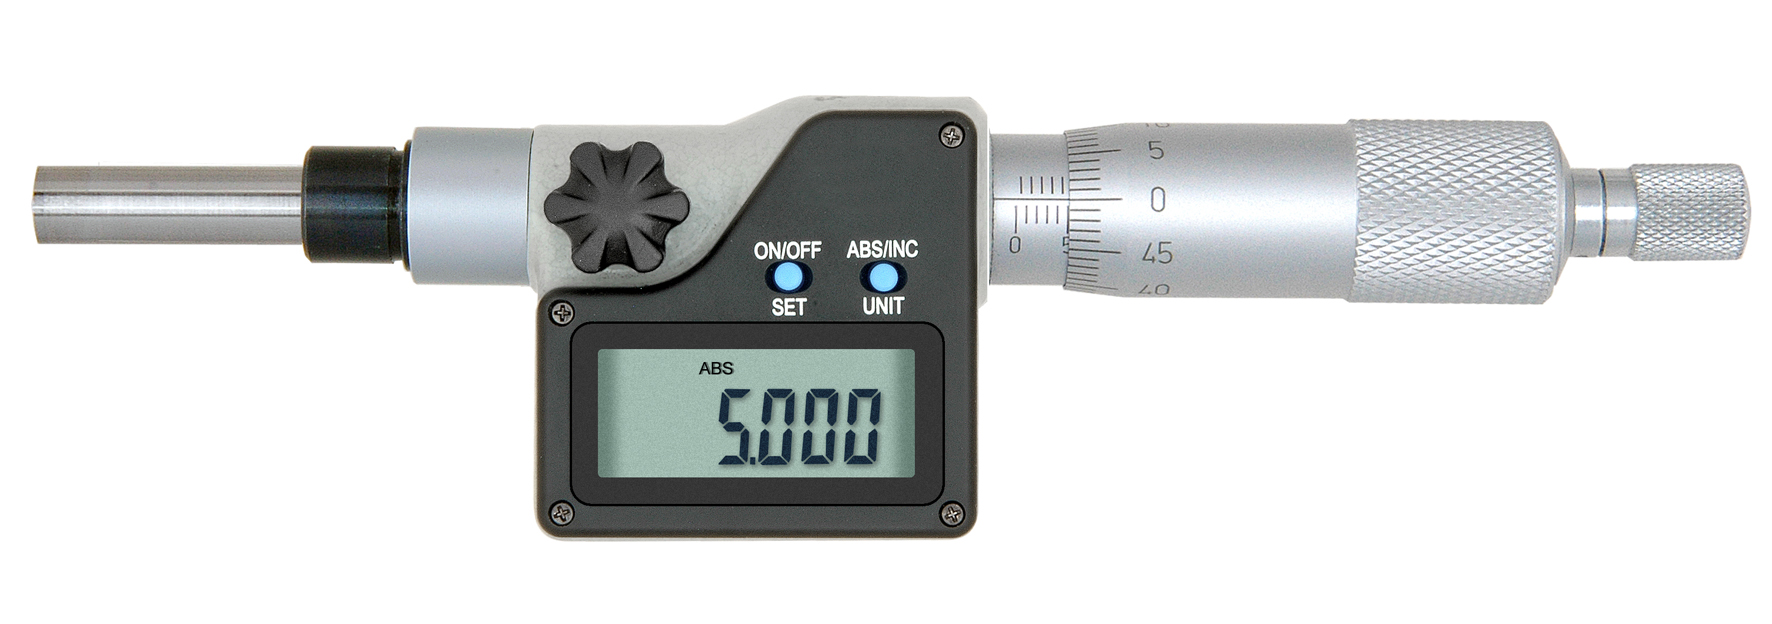 Digital-Einbau-Messschraube DIN 863 - 25 mm - mit Aufnahme Ø5 mm